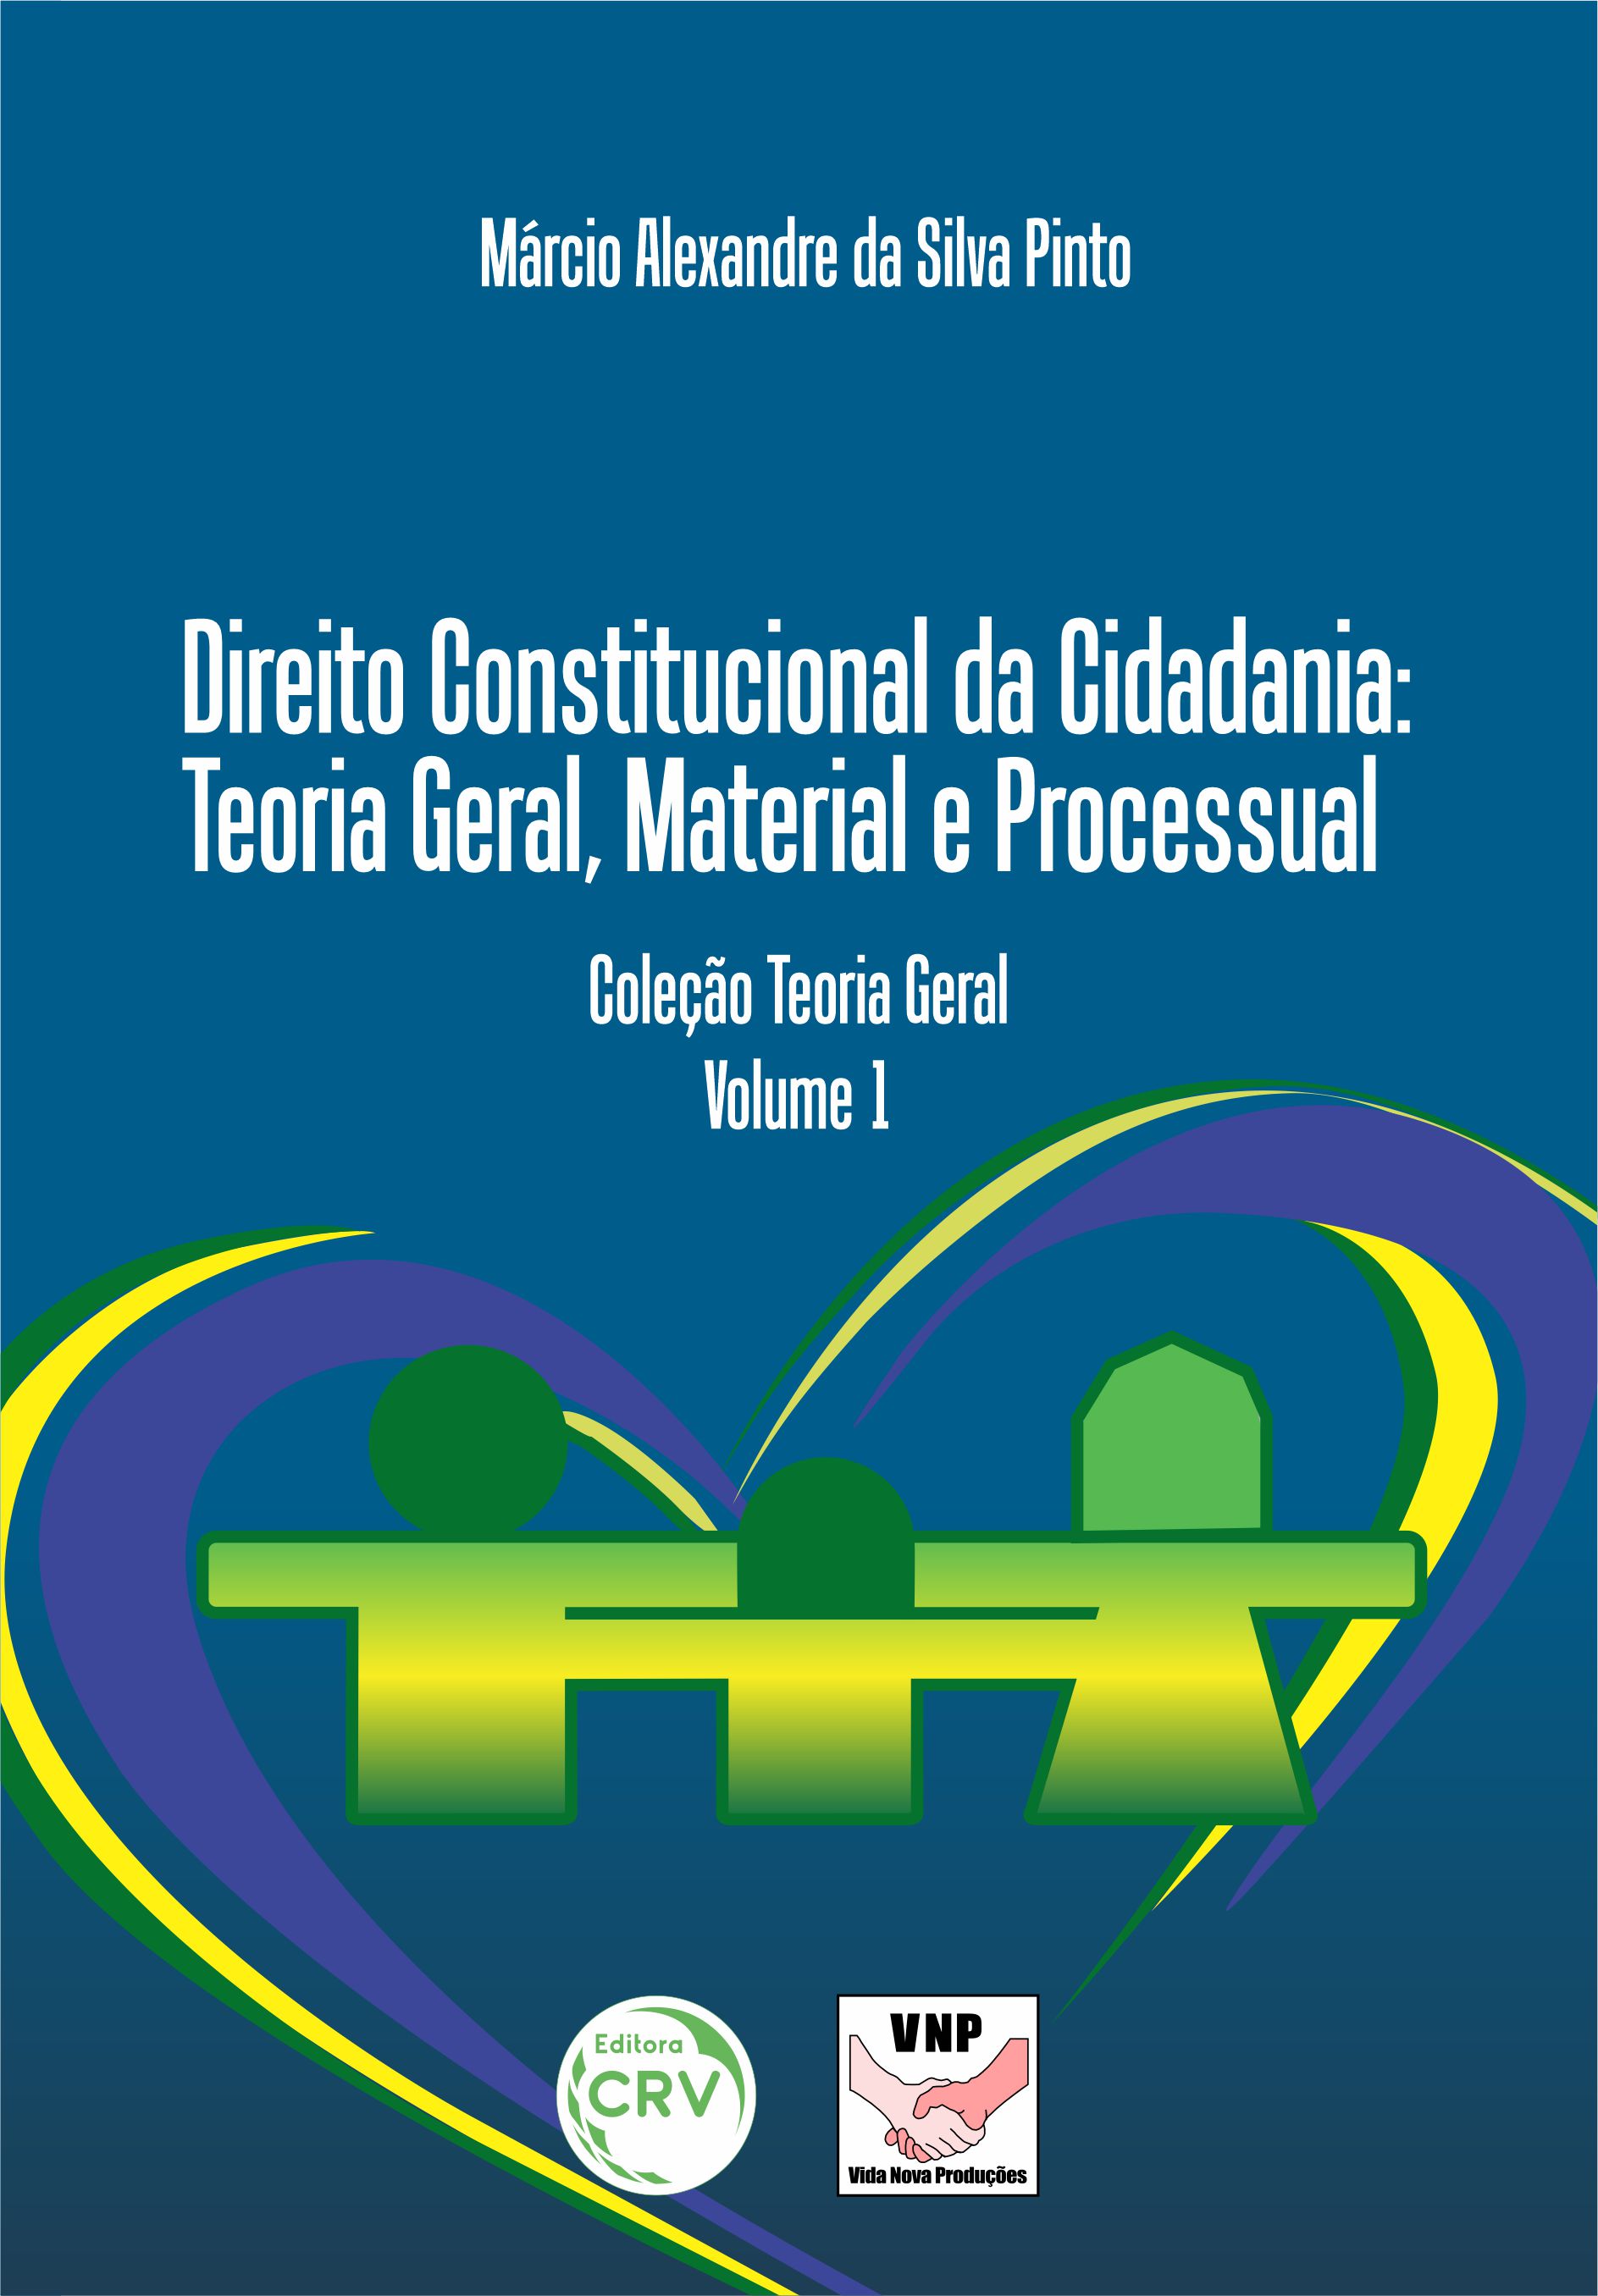 Capa do livro: DIREITO CONSTITUCIONAL DA CIDADANIA: <br>Teoria Geral, Material e Processual <br>Coleção Teoria Geral <br>Volume 1